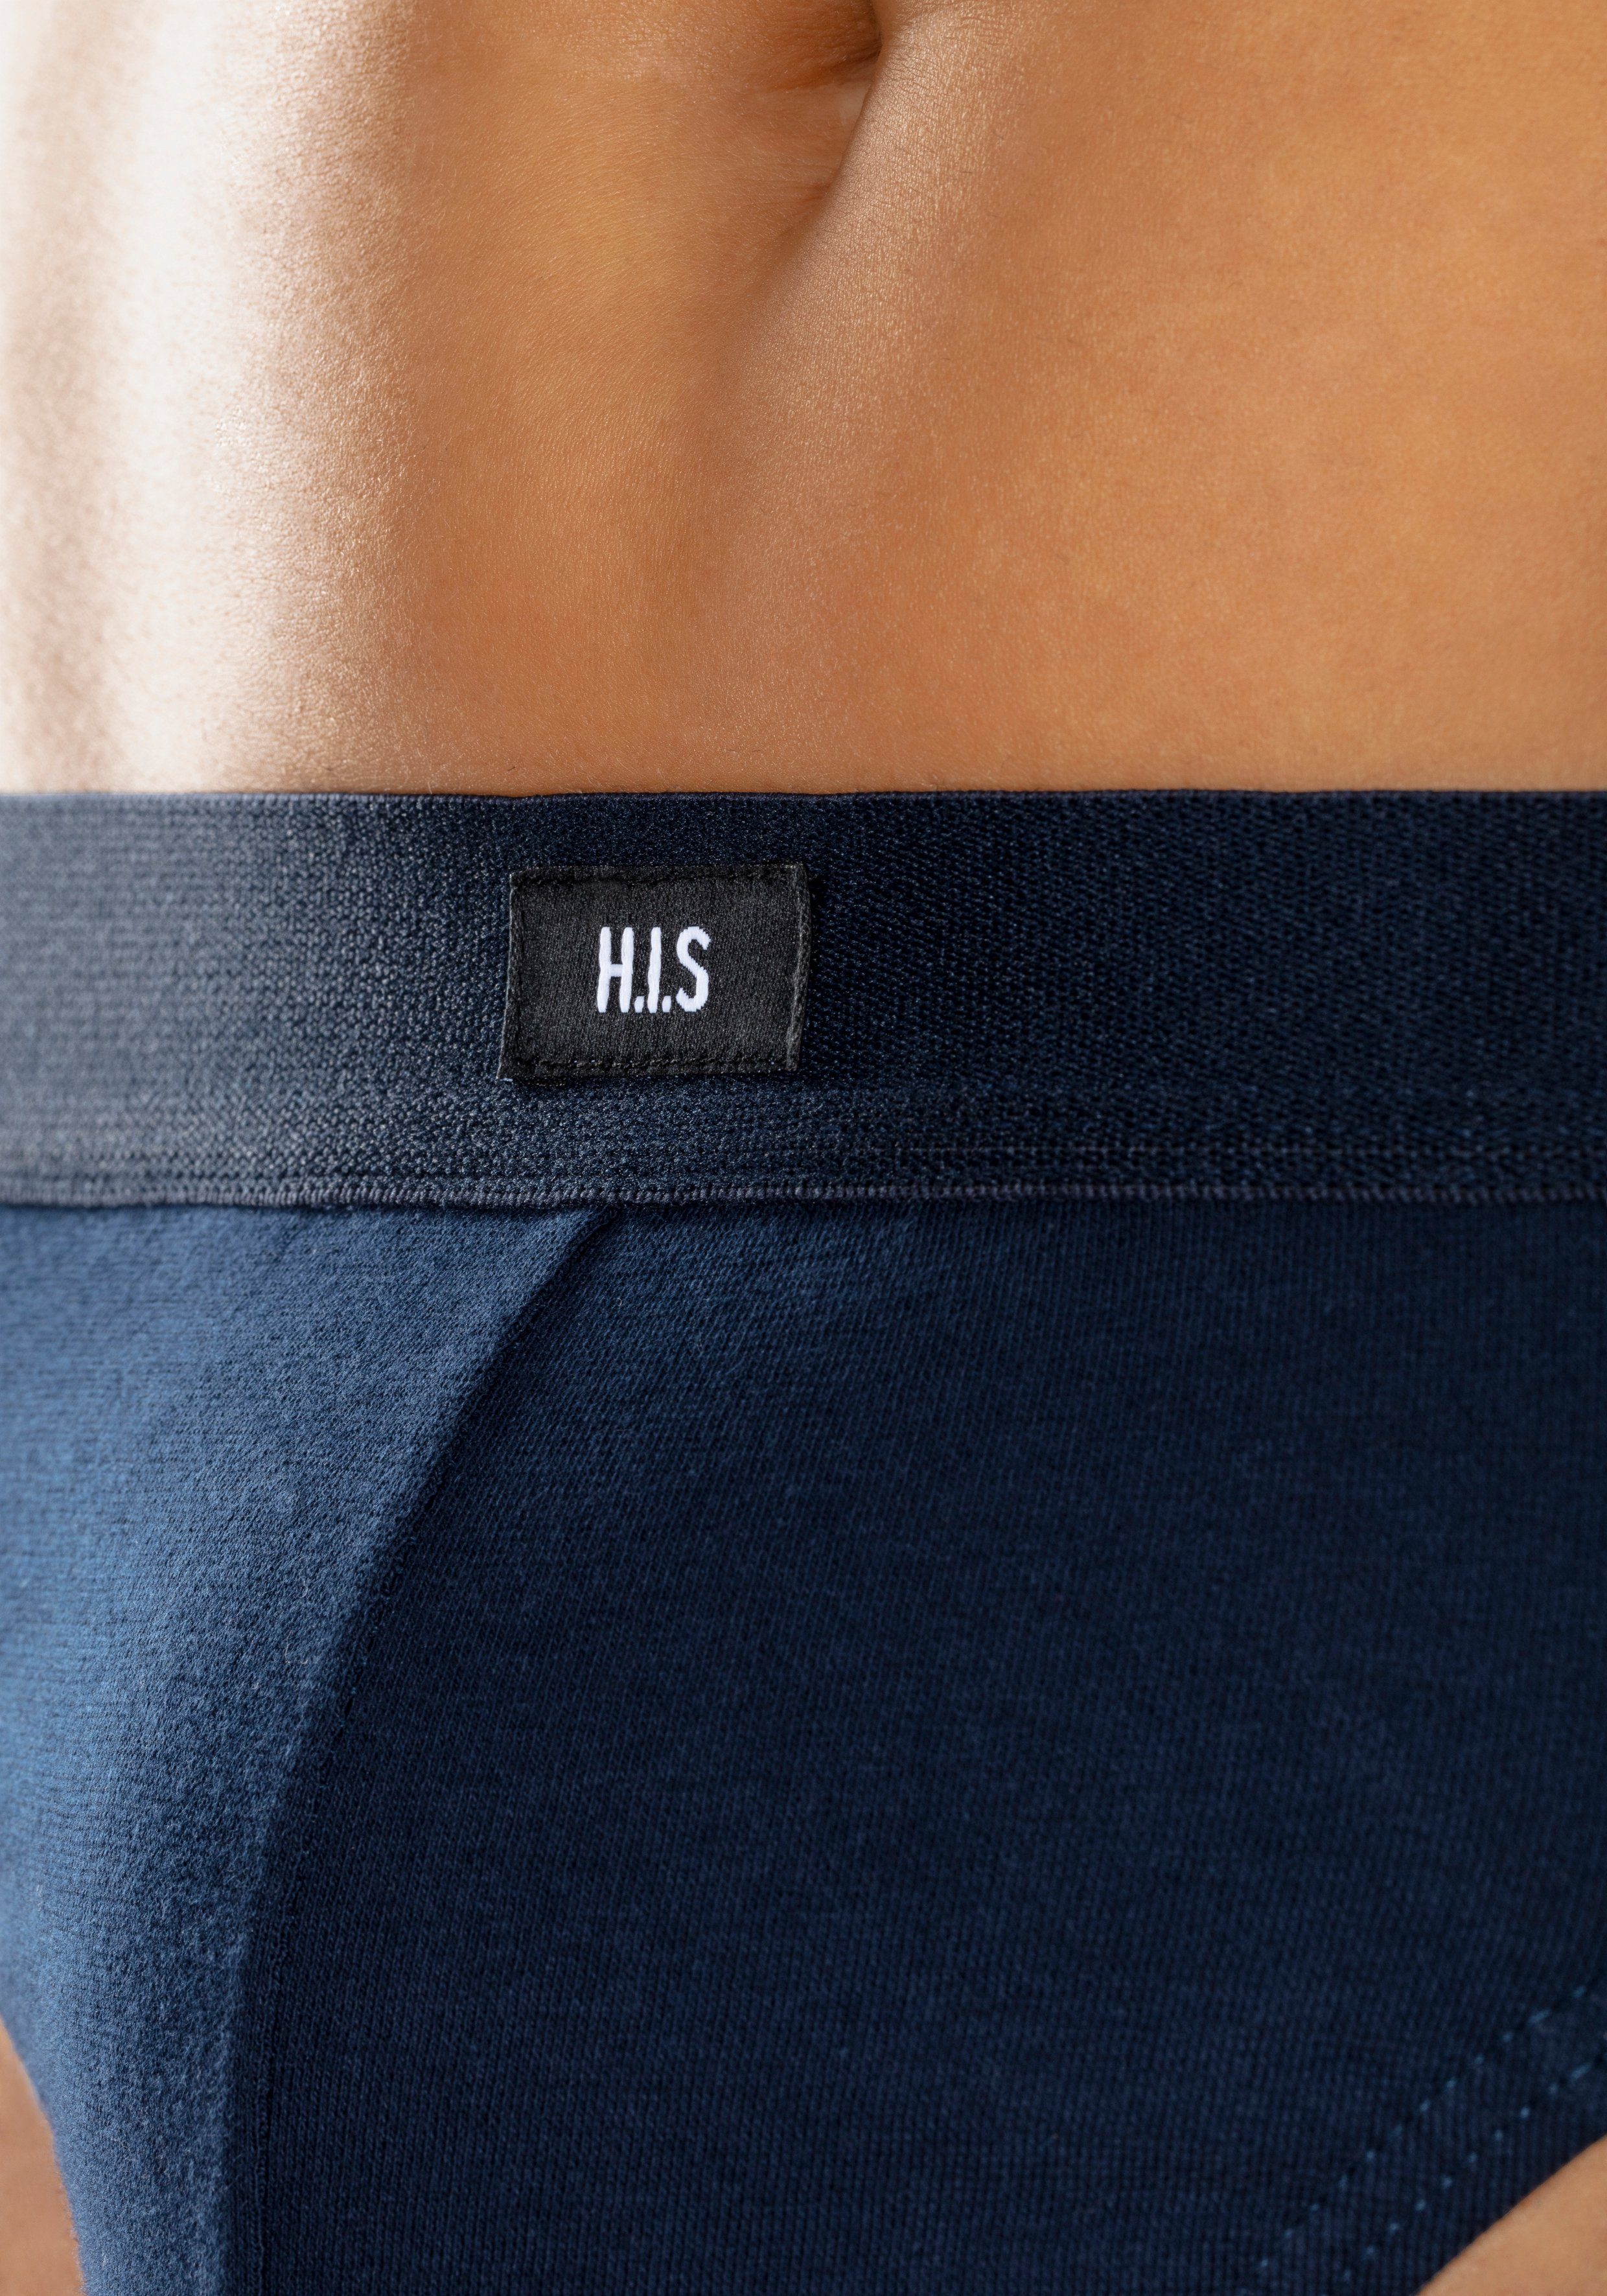 marine, vorn Logo grau-meliert, H.I.S H.I.S (Packung, schwarz mit Slip 3-St)